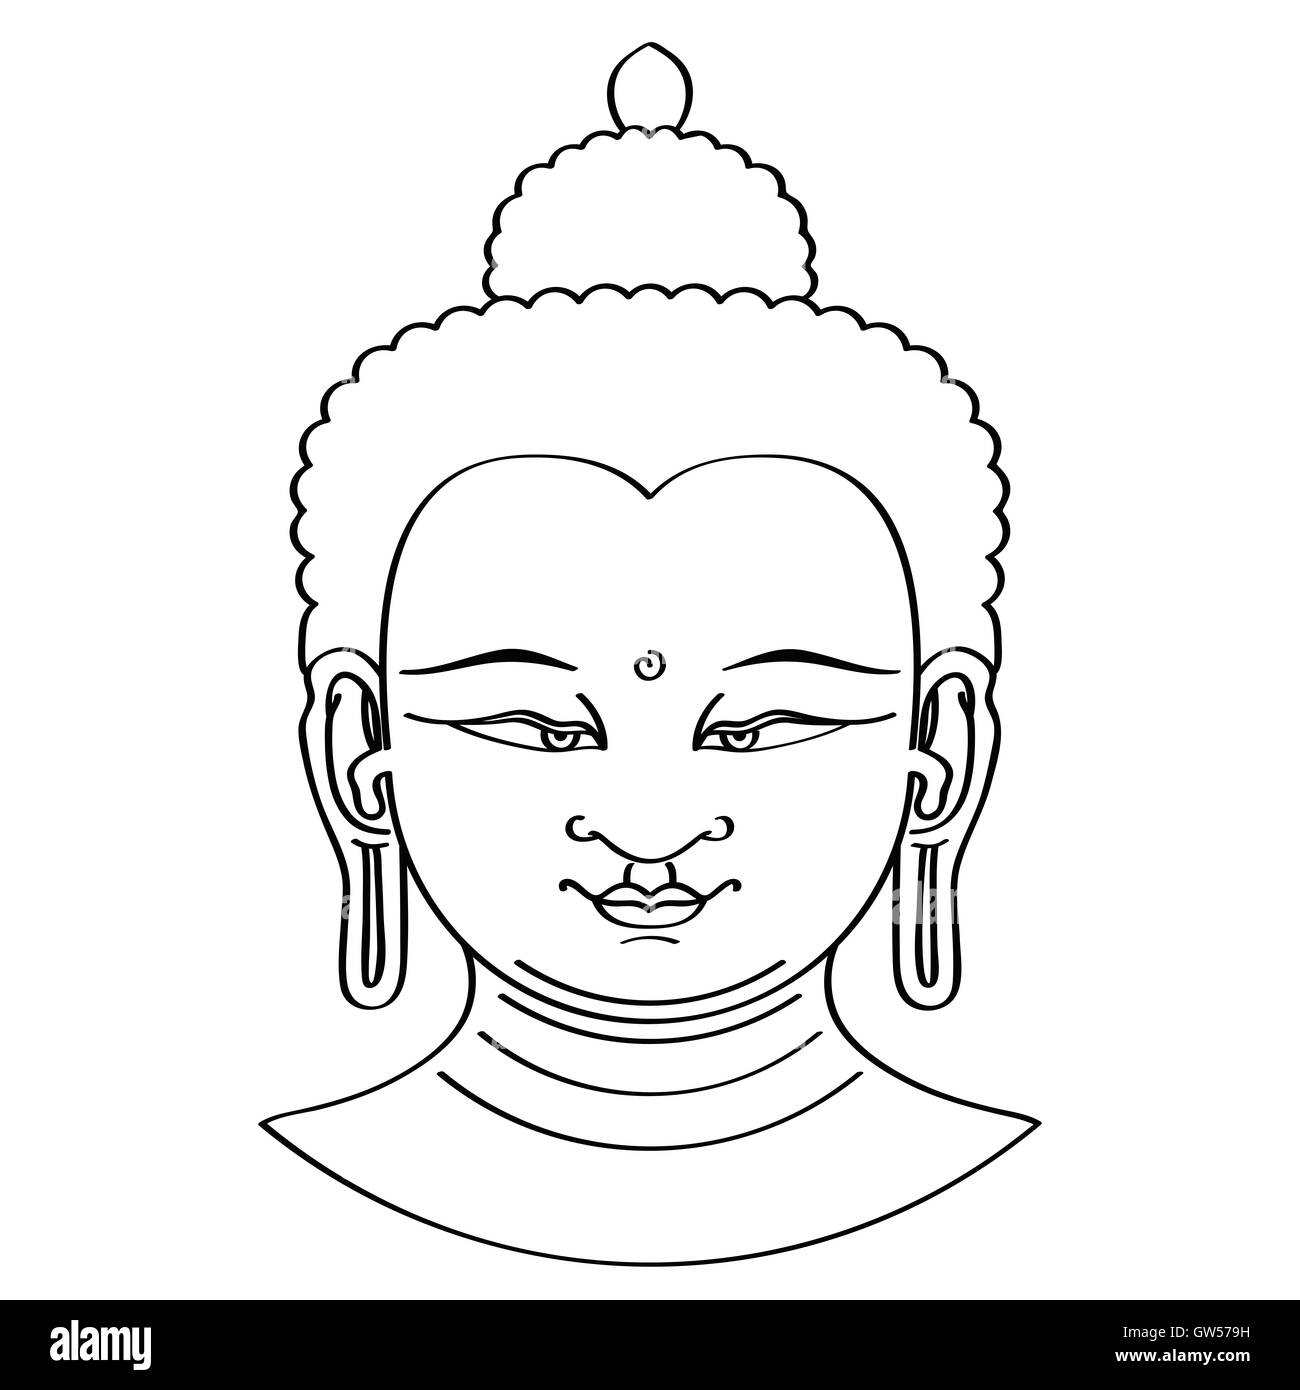 Buddha Kopf Abbildung in Pinseltechnik. Schwarzen Pinselstrichen auf weißem Hintergrund. Stockfoto